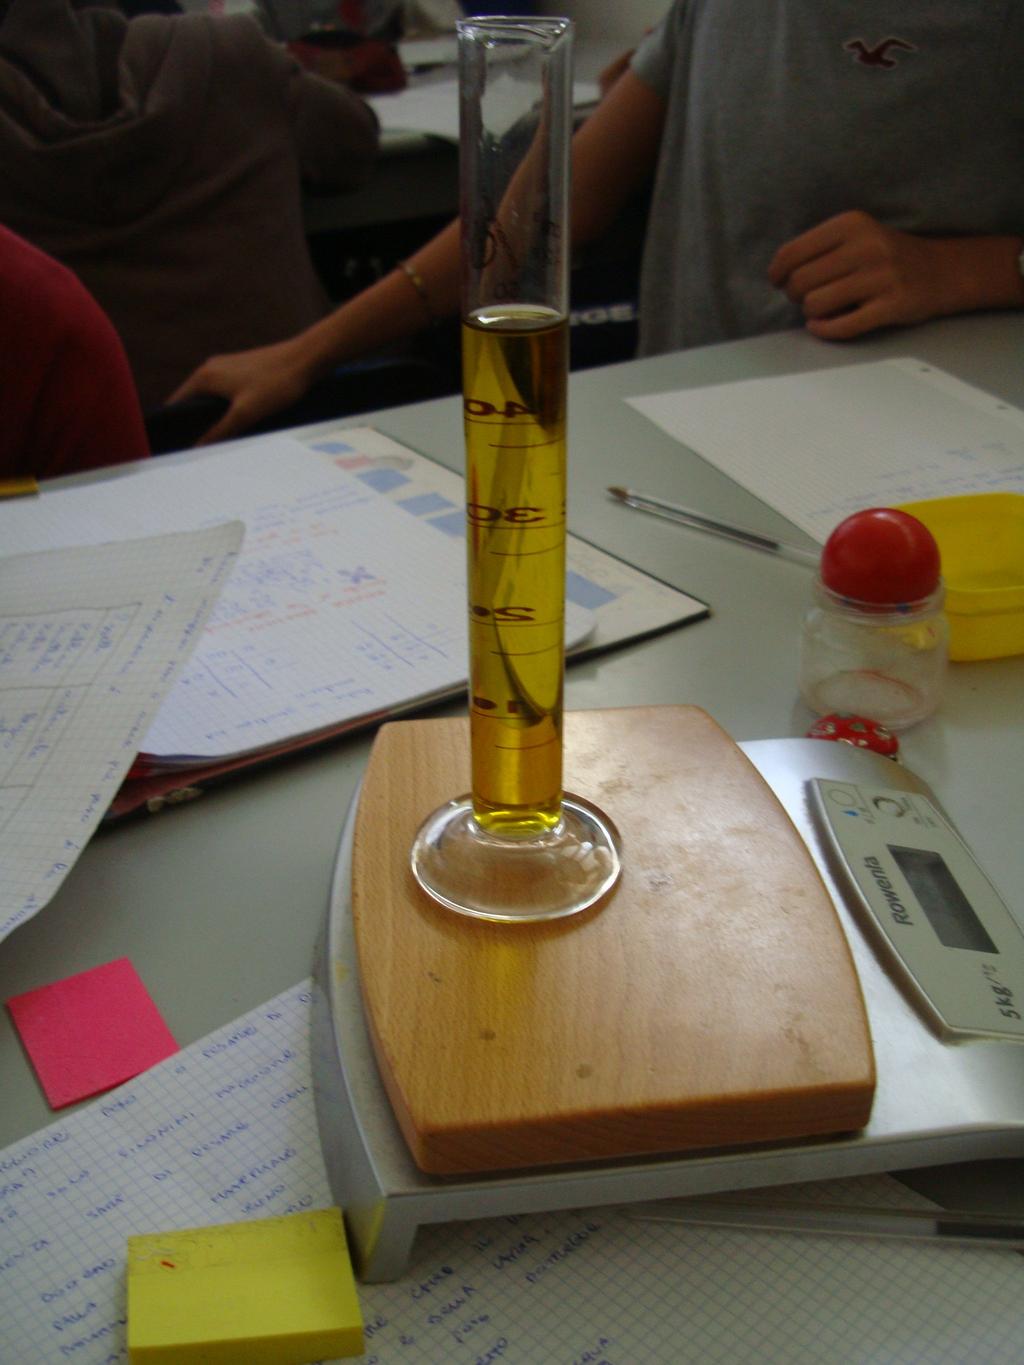 Seconda attività Viene proposta una seconda esperienza, con acqua e olio. Dopo avere fatto la tara, si riempie un cilindro di olio (50 ml) e si pesa.